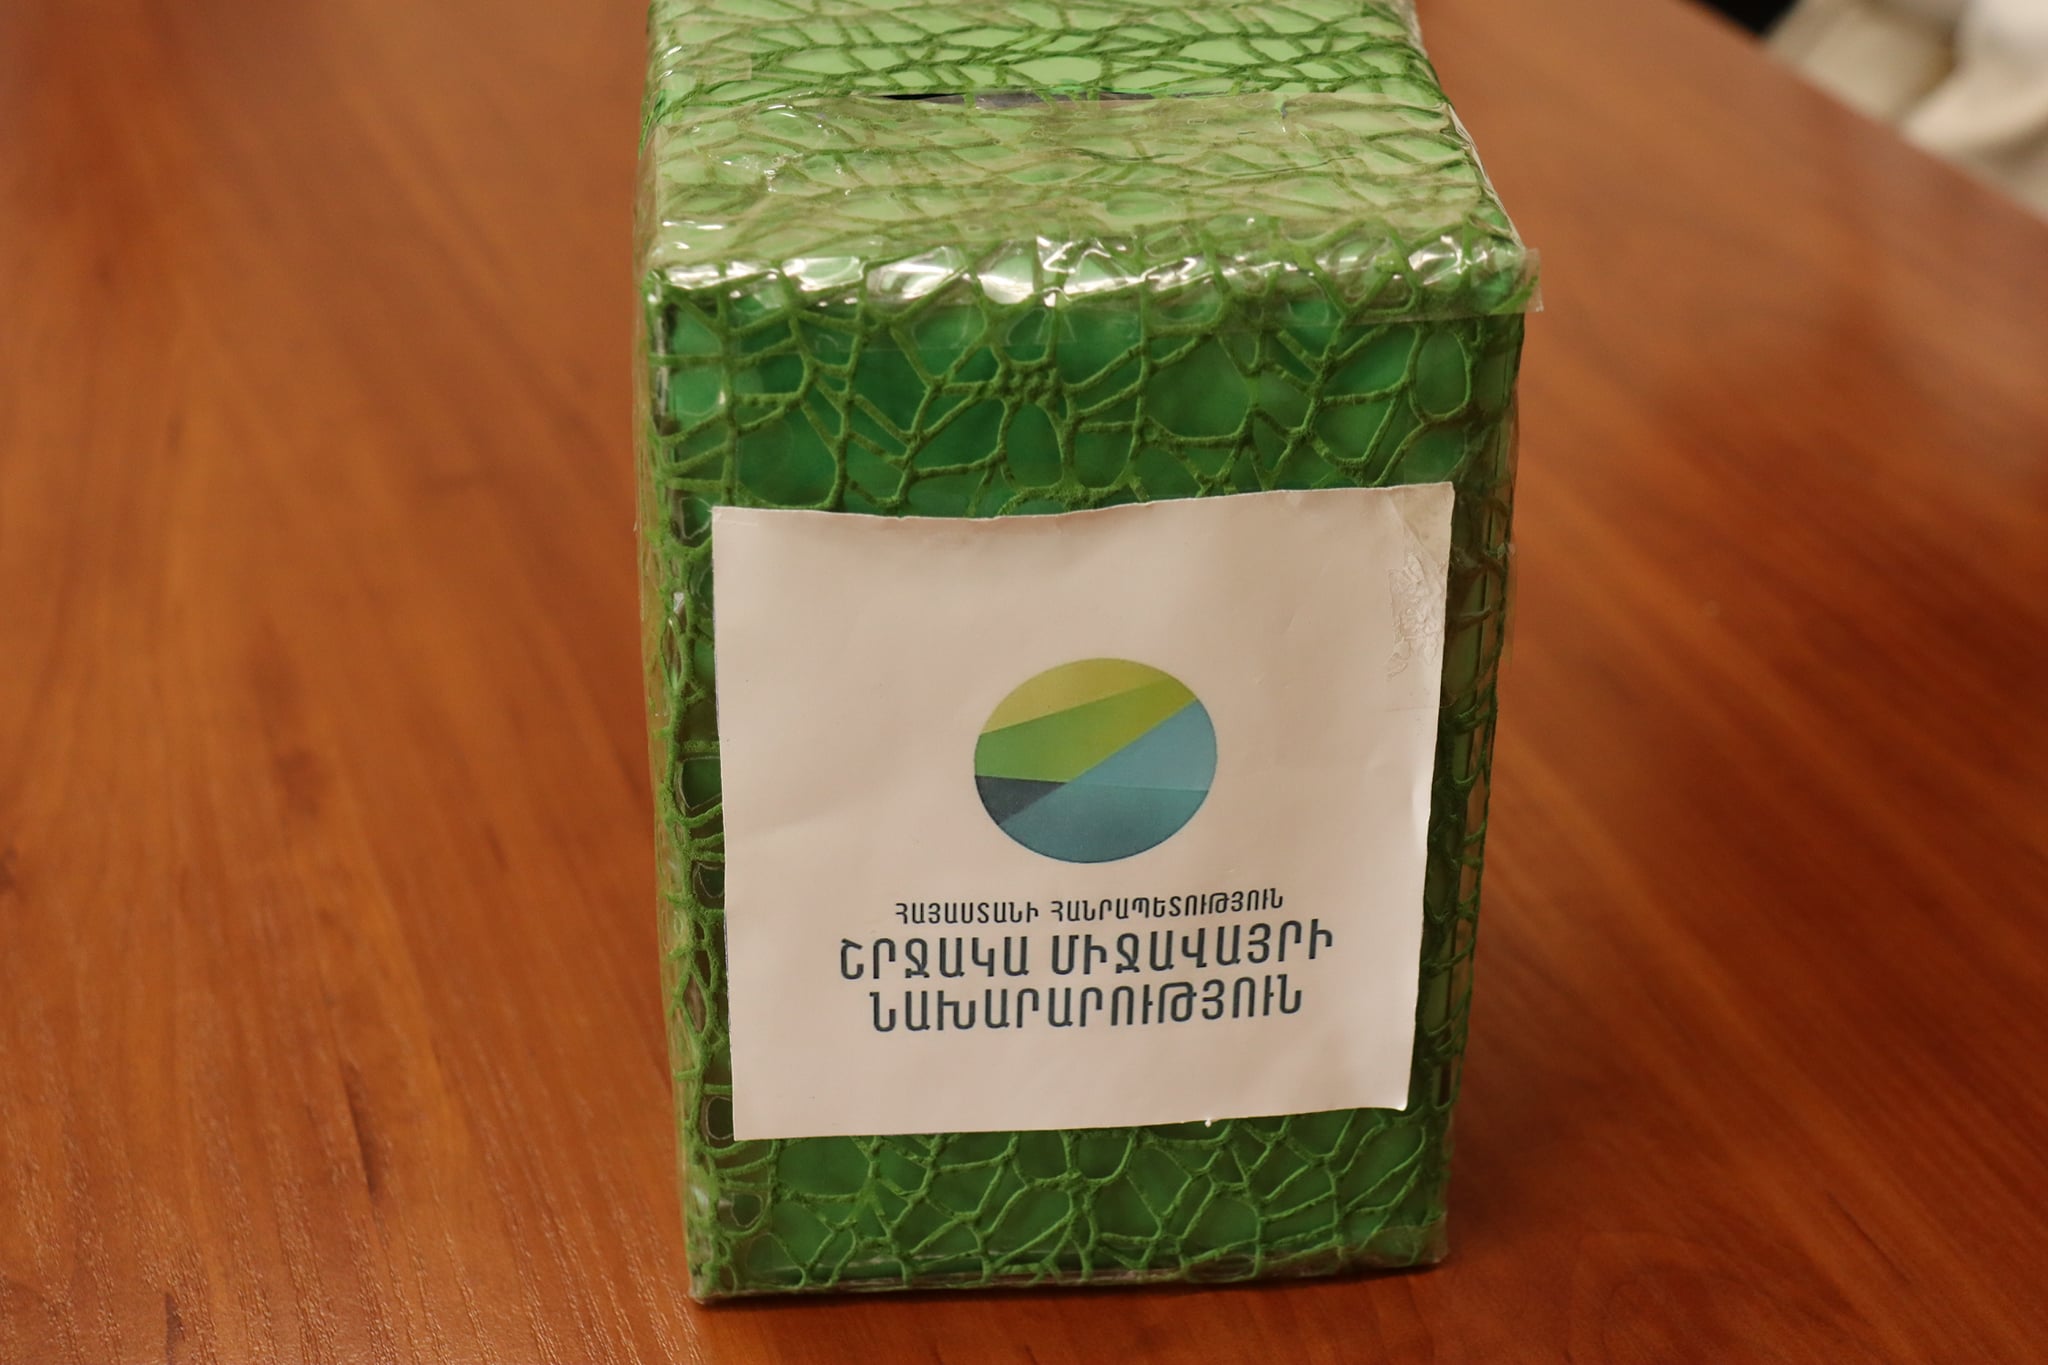 Եռամսյա ժամկետով Green box green offers / կանաչ արկղ կանաչ նպատակների համար ծրագիրը կյանքի կոչվեց